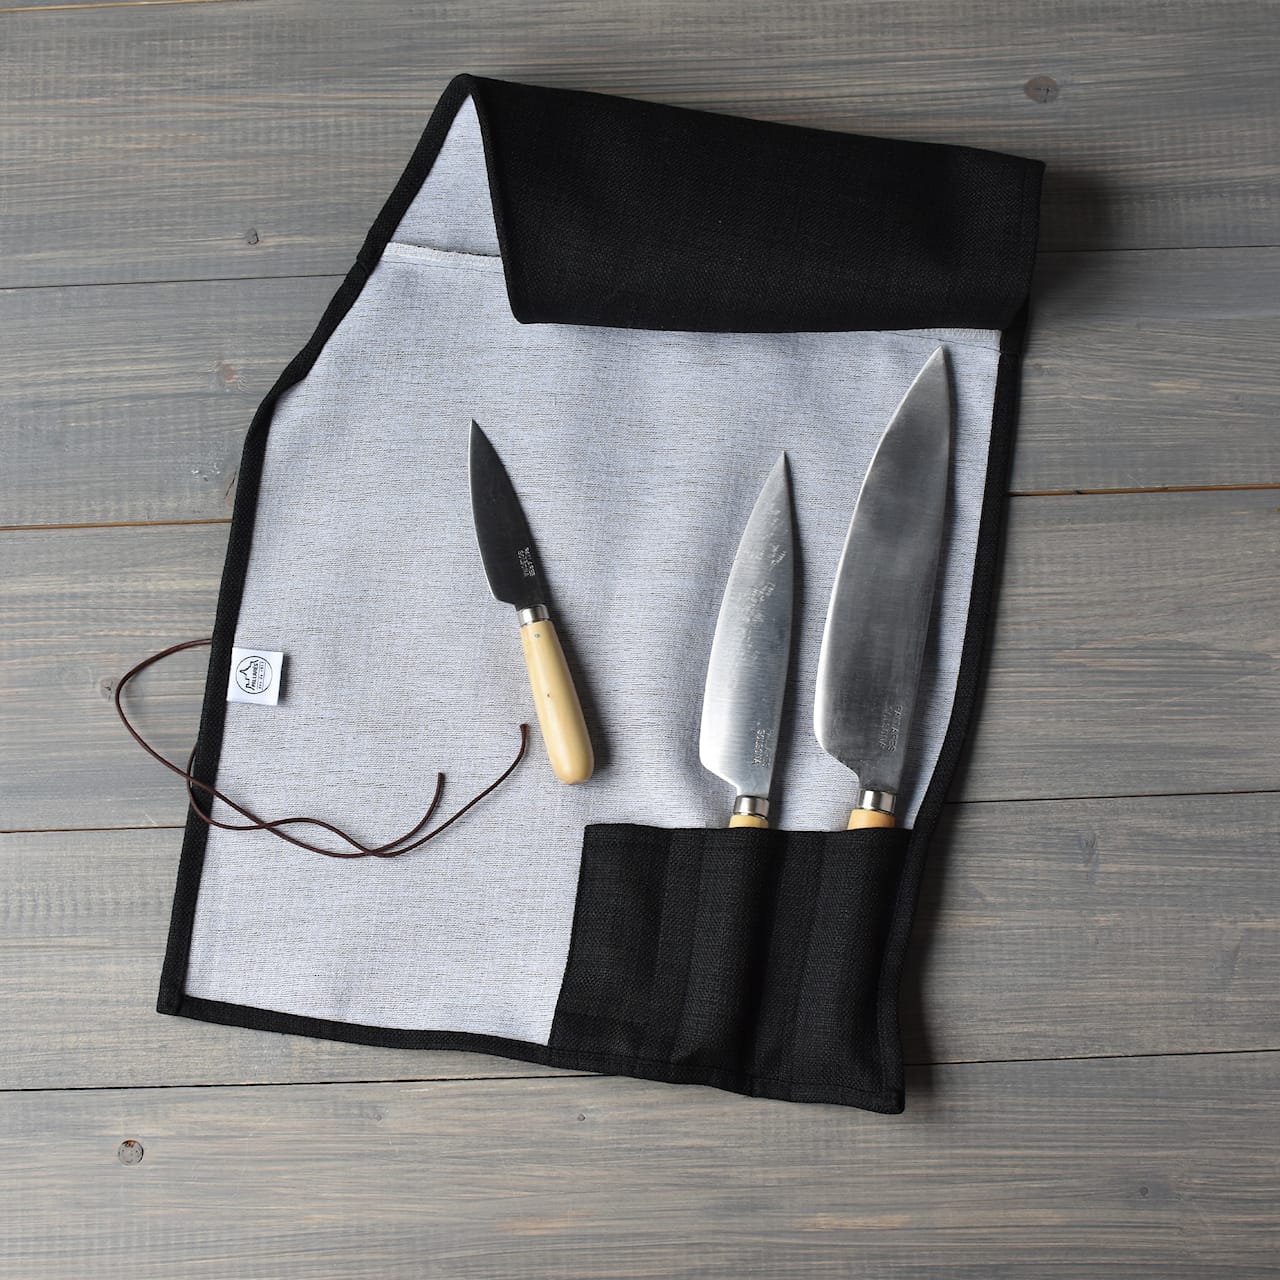 Traditional Kitchen Knives Large Carbon Steel / Black set